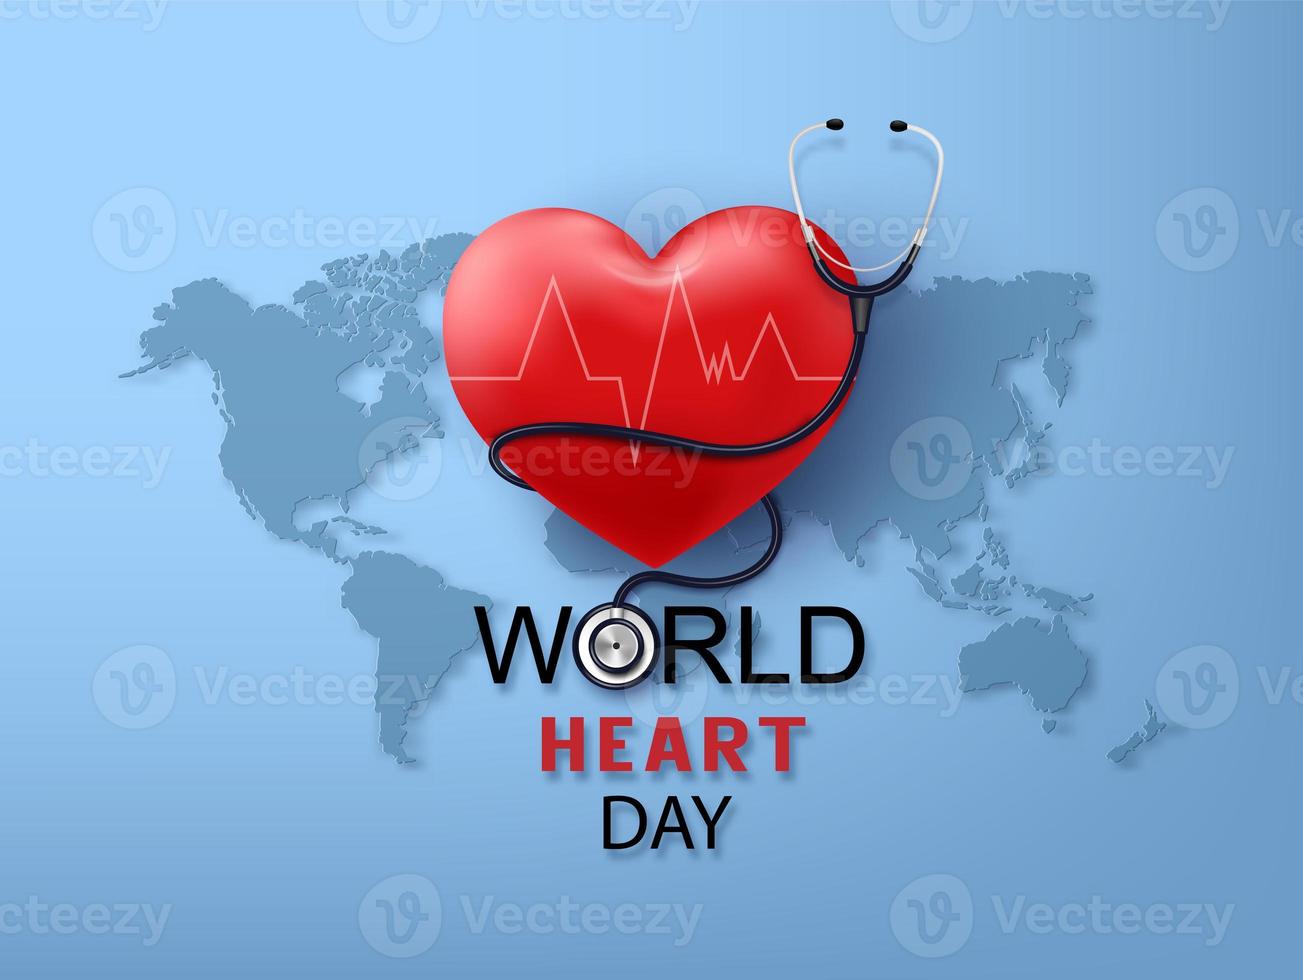 World Heart Day photo